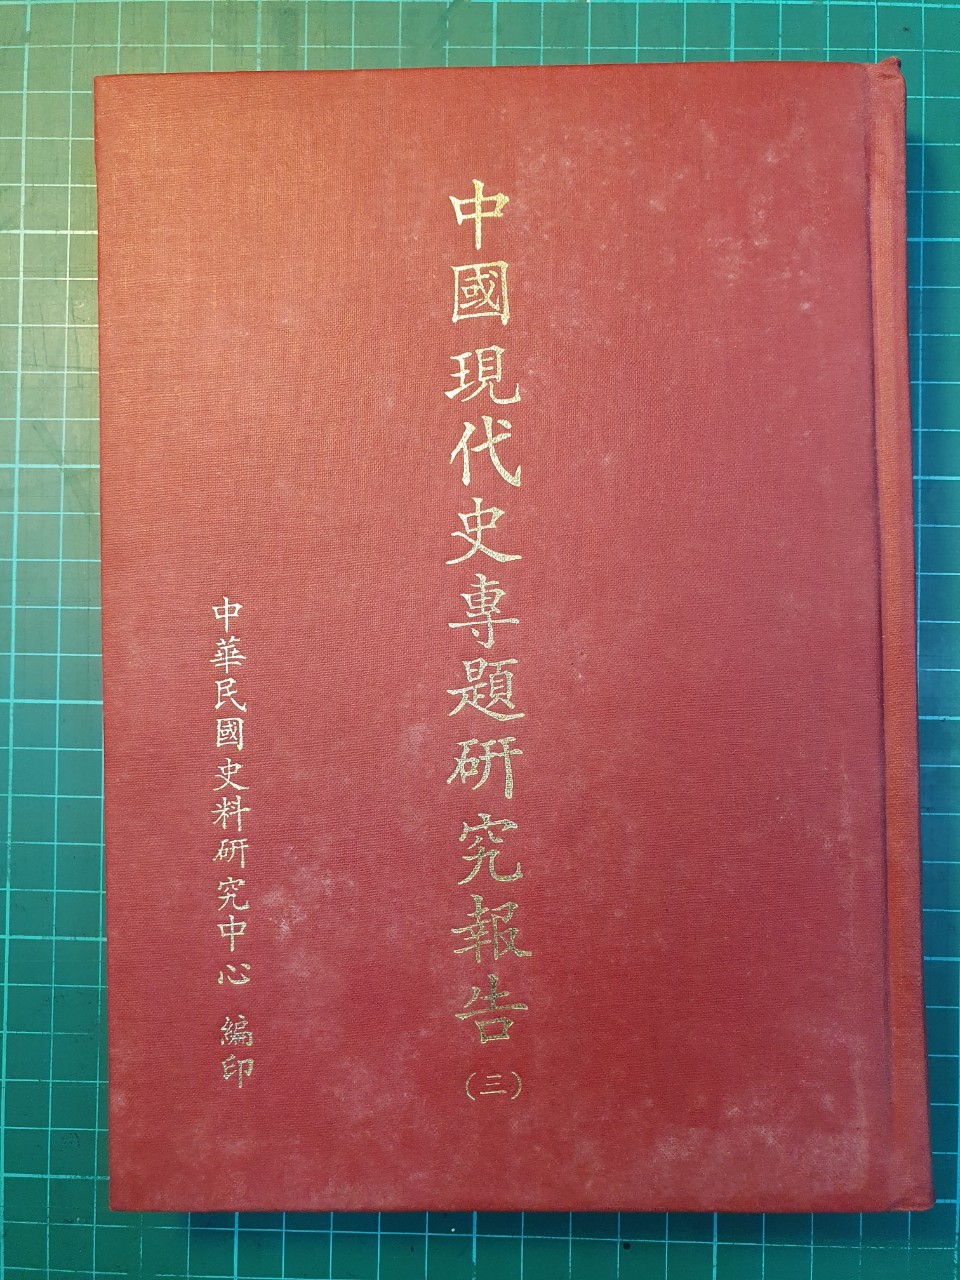 中國現代史專題研究報告第三輯